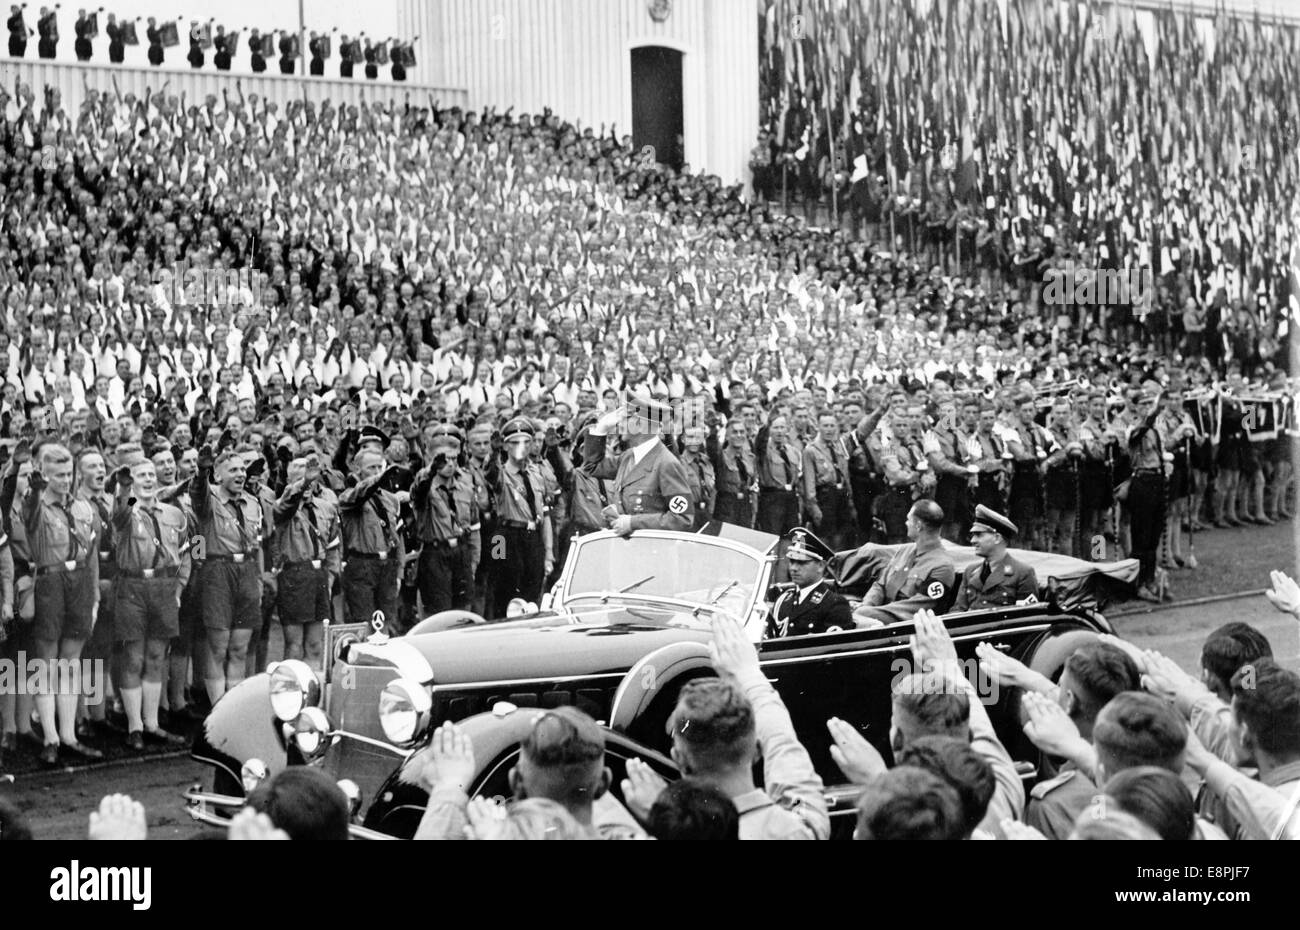 Rallye de Nuremberg 1938 à Nuremberg, Allemagne - Adolf Hitler passe devant et accueille les membres de la Jeunesse d'Hitler à l'occasion de l'appel de la Jeunesse d'Hitler (HJ) au 'Stadium of the Hitler Youth' sur les lieux de rassemblement du parti nazi. (Défauts de qualité dus à la copie historique de l'image) Fotoarchiv für Zeitgeschichtee - PAS DE SERVICE DE FIL - Banque D'Images